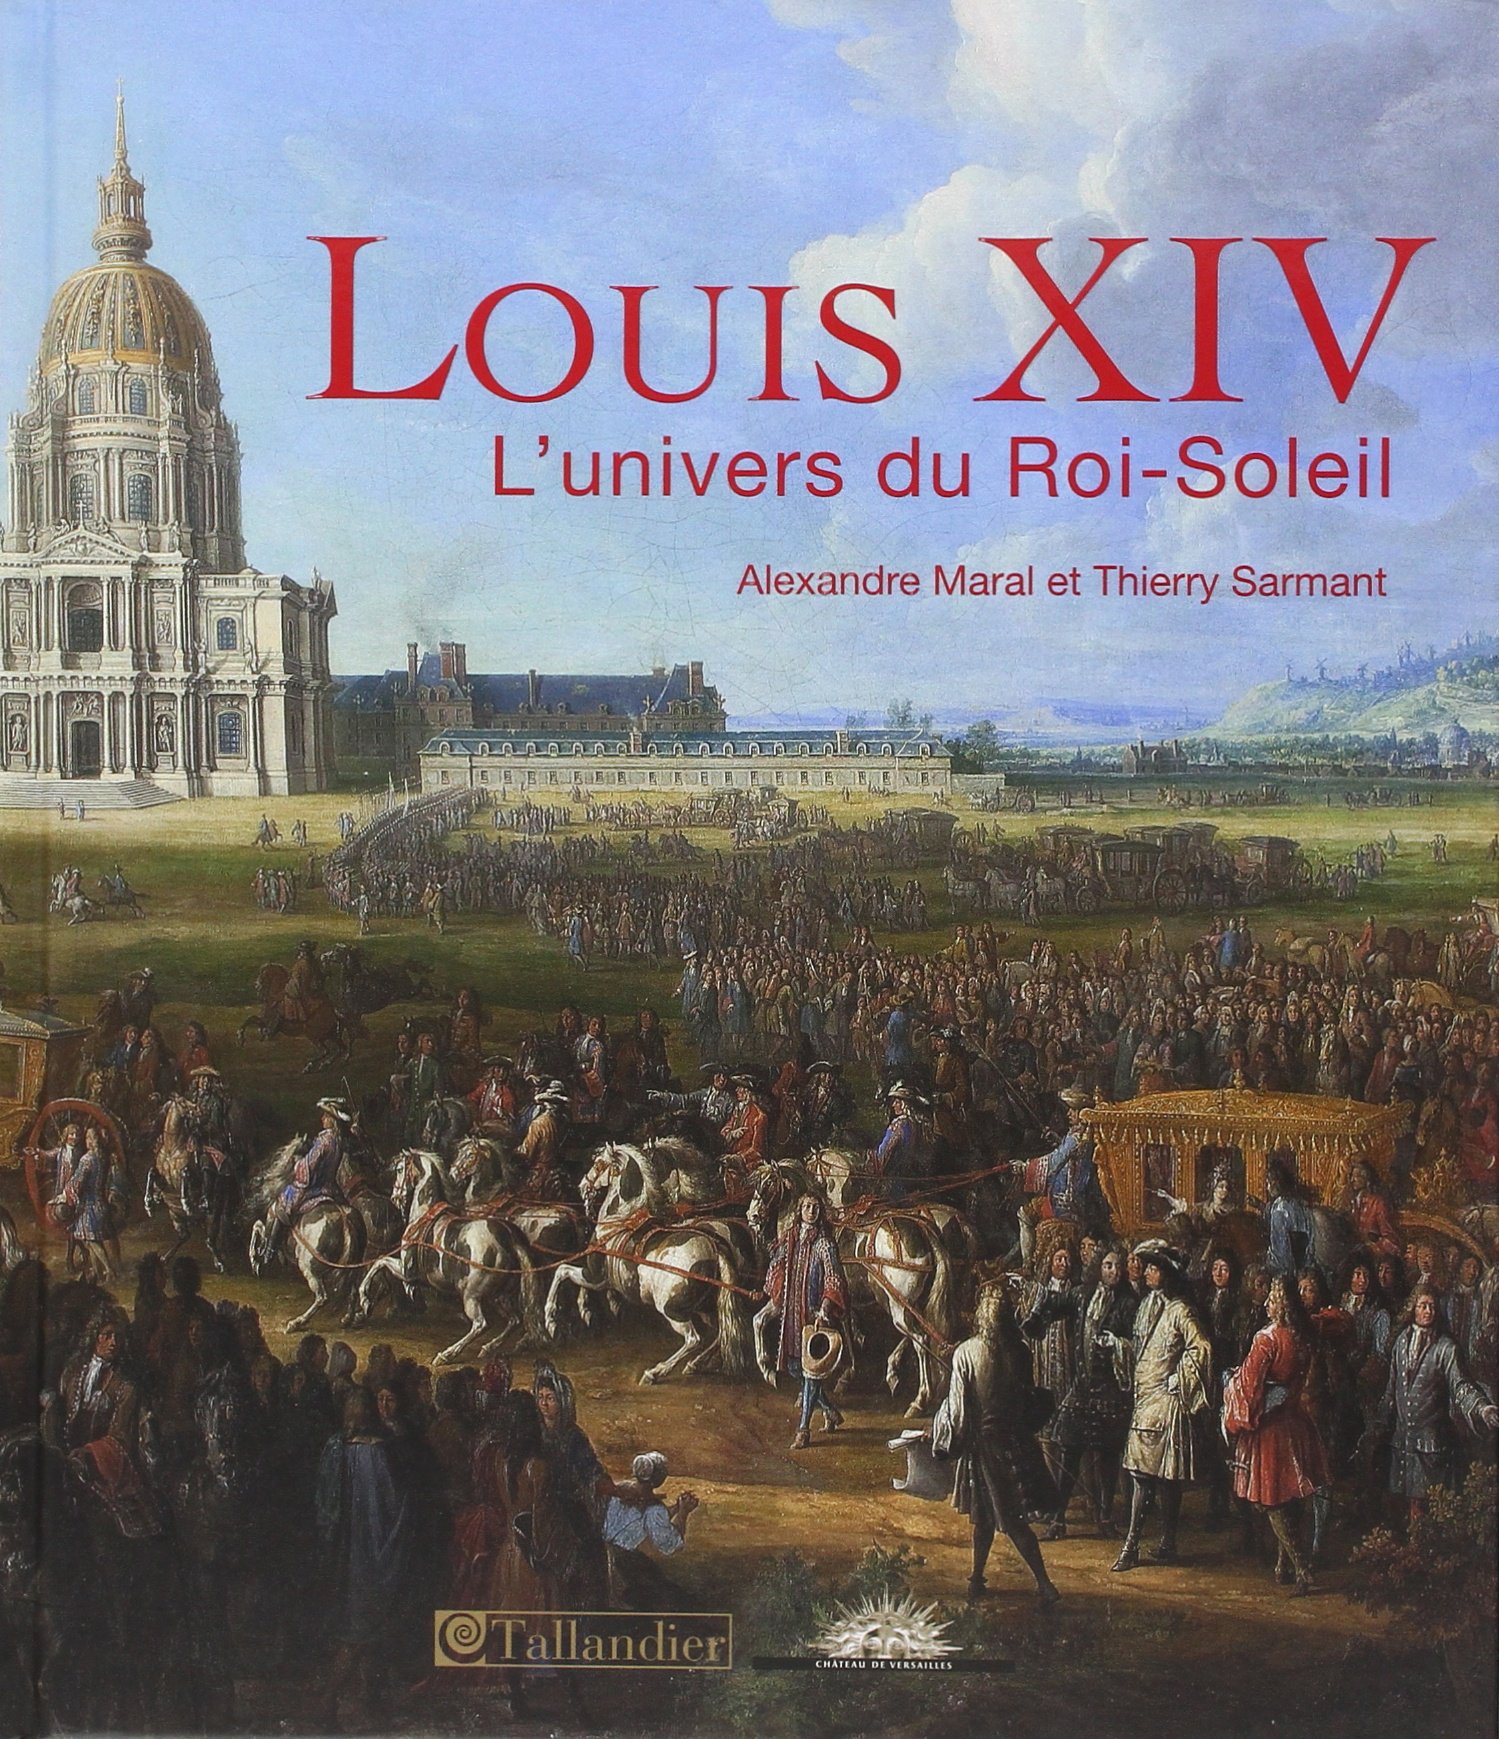 Louis XIV. L'univers du Roi-Soleil, 2014, 224 p.